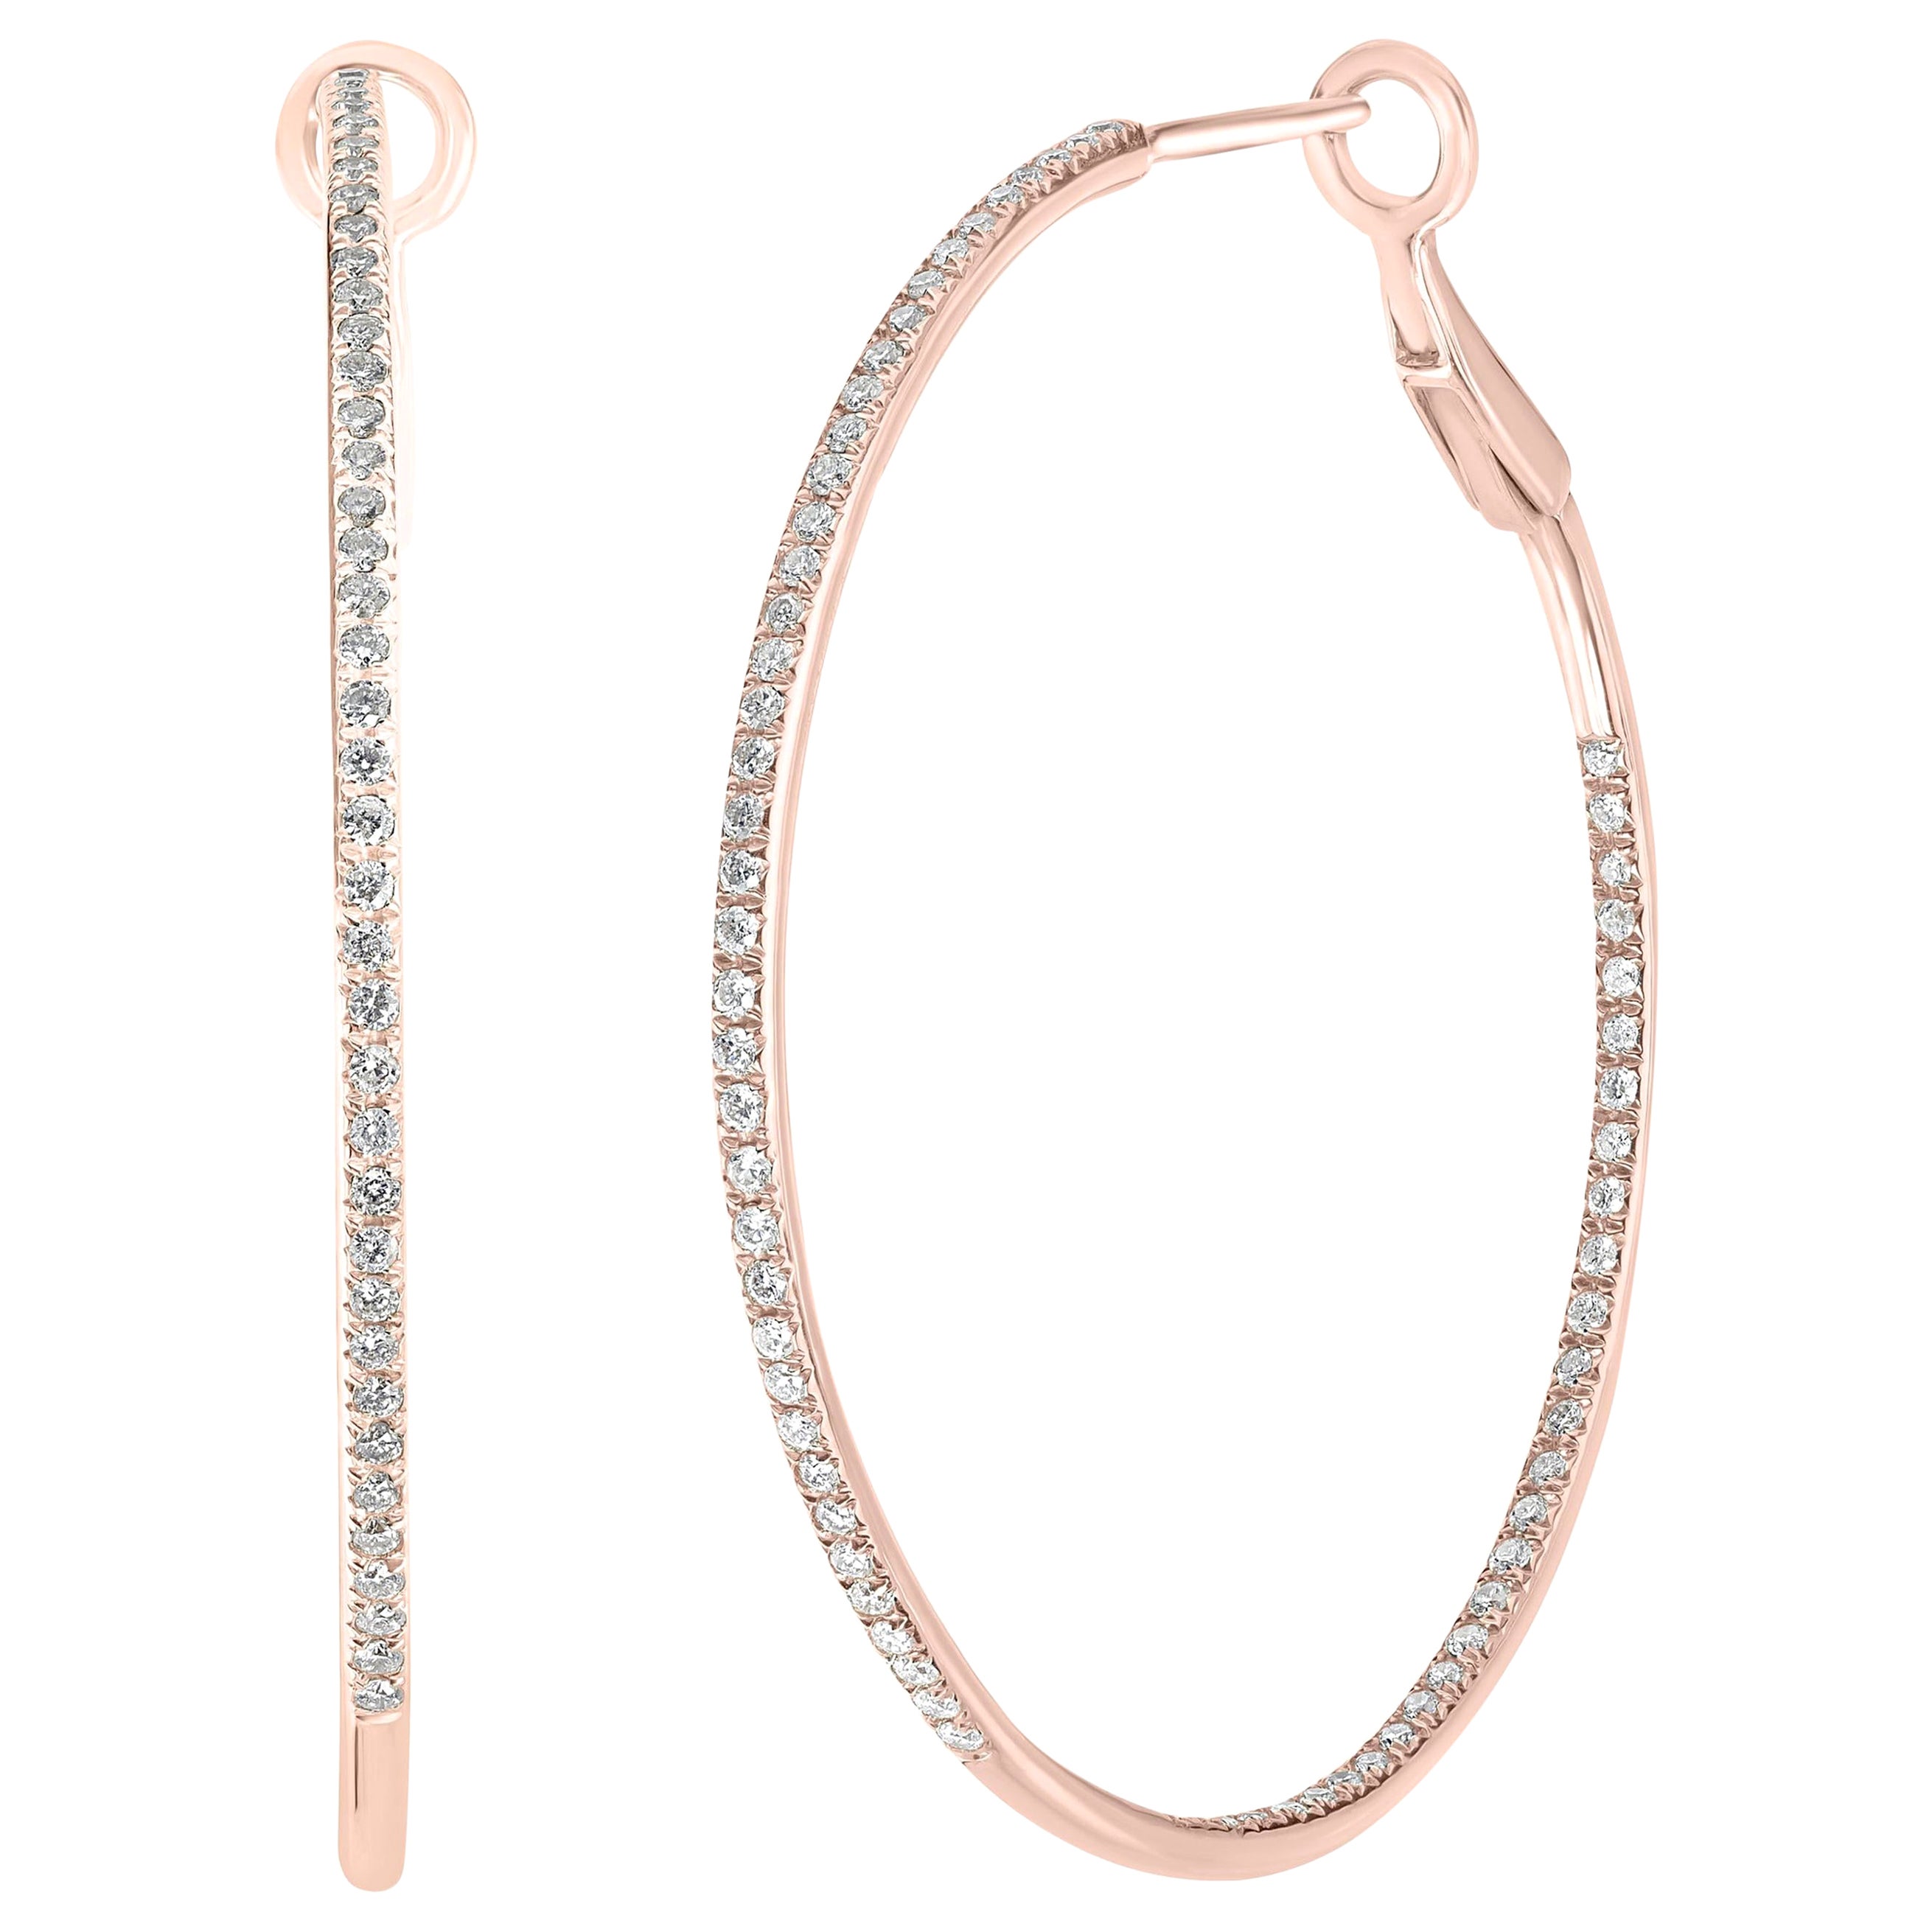 Luxle 0.73cttw Round Single Cut Diamond Hoop Earrings in 14k Rose Gold For Sale